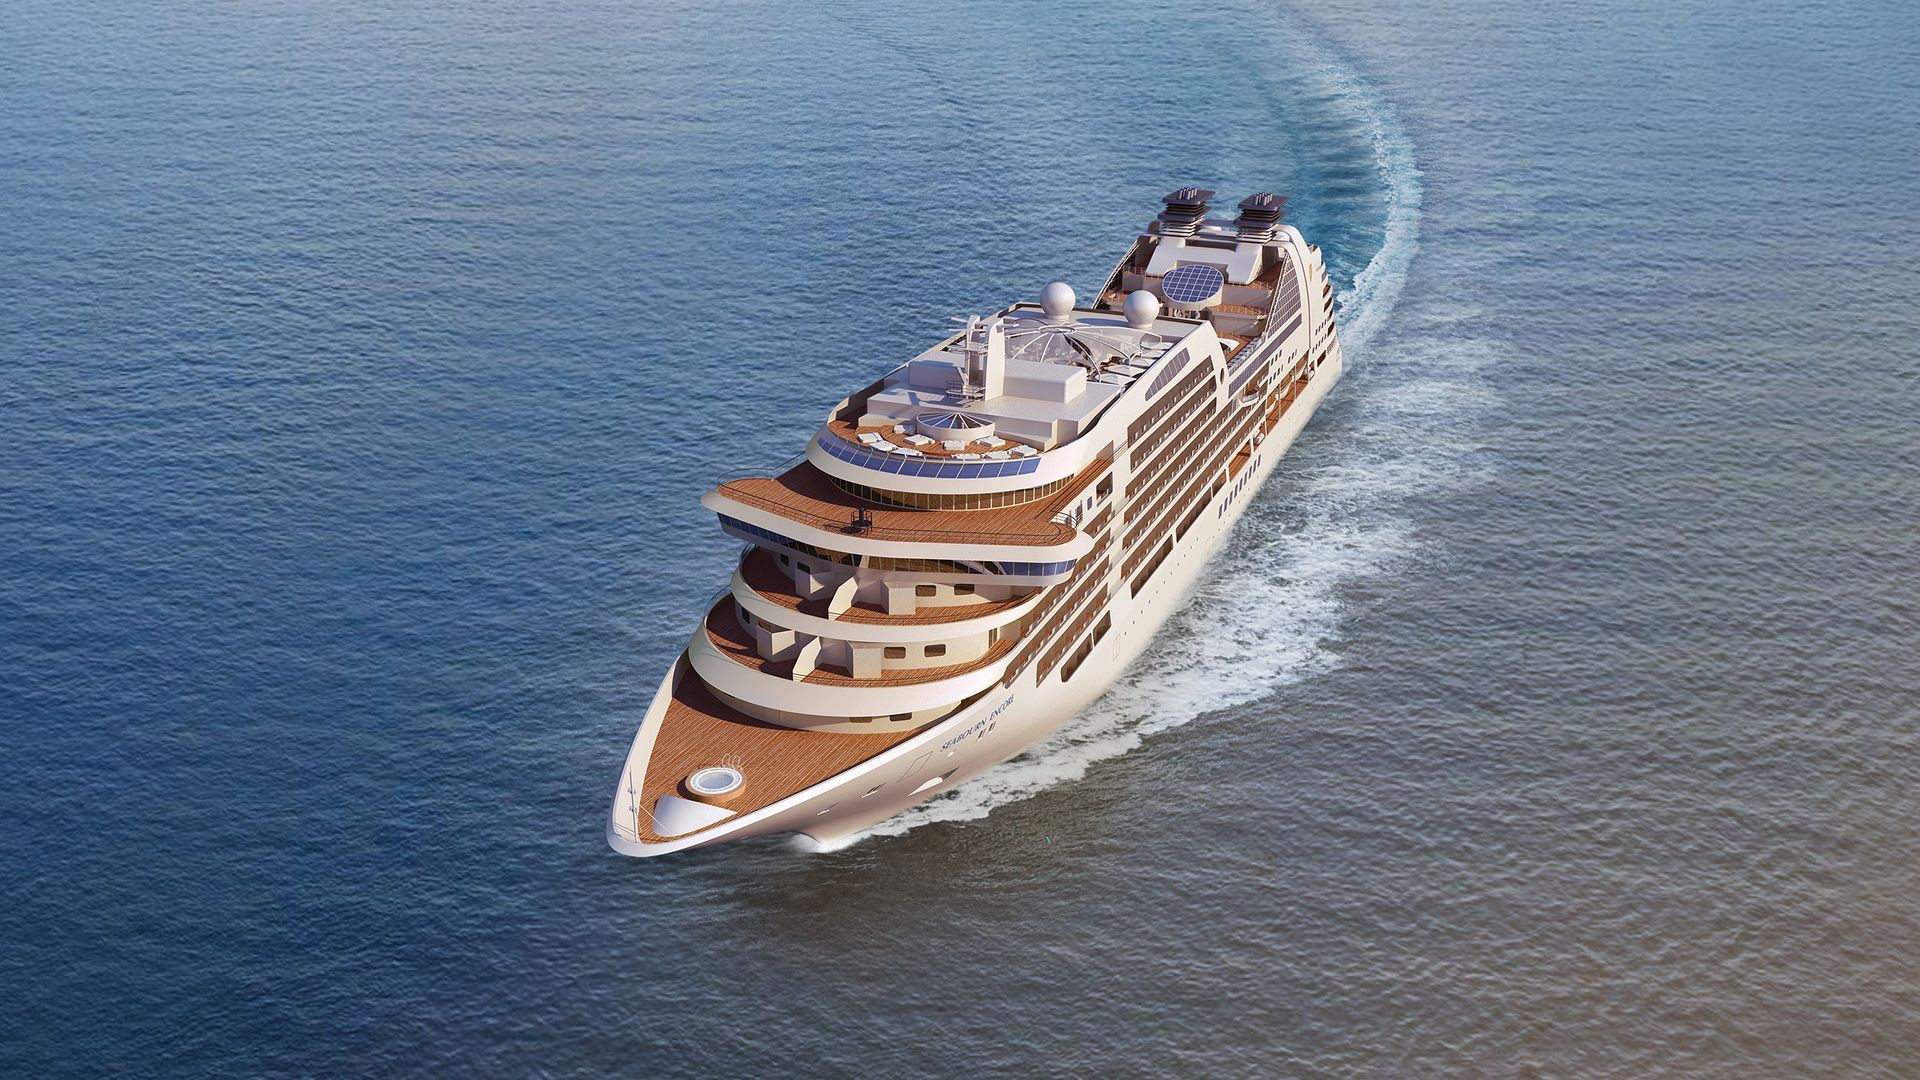 Seabourn Encore začína túto sezónu so zastávkami v Indii, Indonézii a Singapure. Luxusná plavba na novej lodi bude vzrušujúca, pretože loď tejto spoločnosti nikdy nebola taká inovatívna. Tak, ako pri autách, aj medzi loďami je táto korunou vozového parku, ktorý je už teraz najmodernejší, najnovší a najuznávanejší. Spoločnosť Seabourn začala svoje plavby loďou Odyssey v roku 2009 a odvtedy sa posunuli obrovskými lodnými uzlami vpred. Program na lodi je skutočne pestrý: ponúka nákup s významným šéfkuchárom, množstvo obchodov, fitness centrum, ale aj ochutnávky vína a kaviár. 